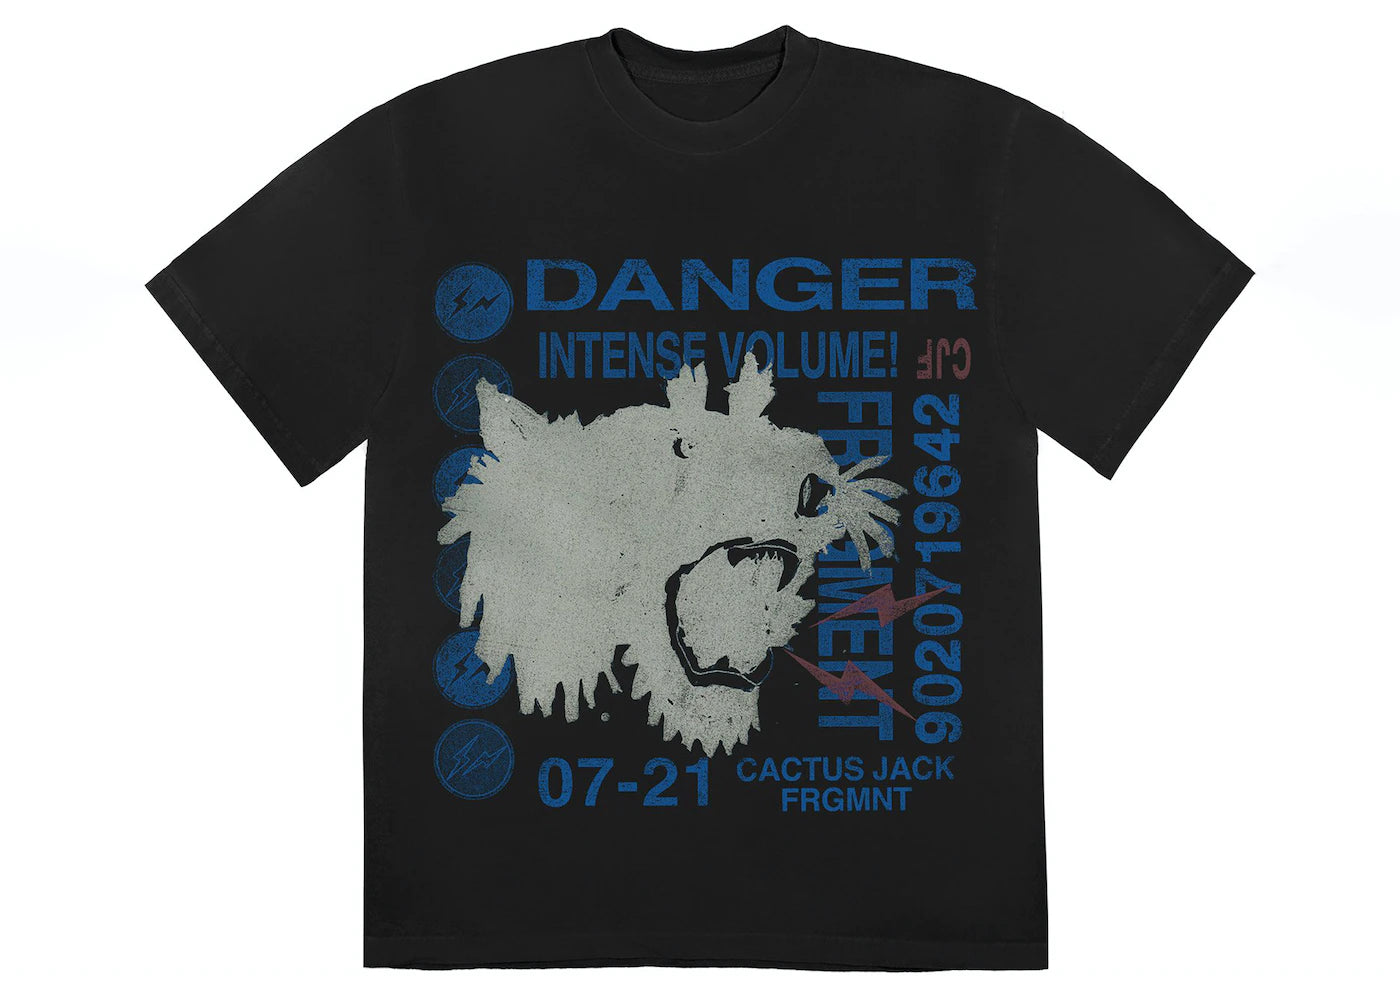 Travis Scott Cactus Jack For Fragment Danger T-Shirt Washed Black